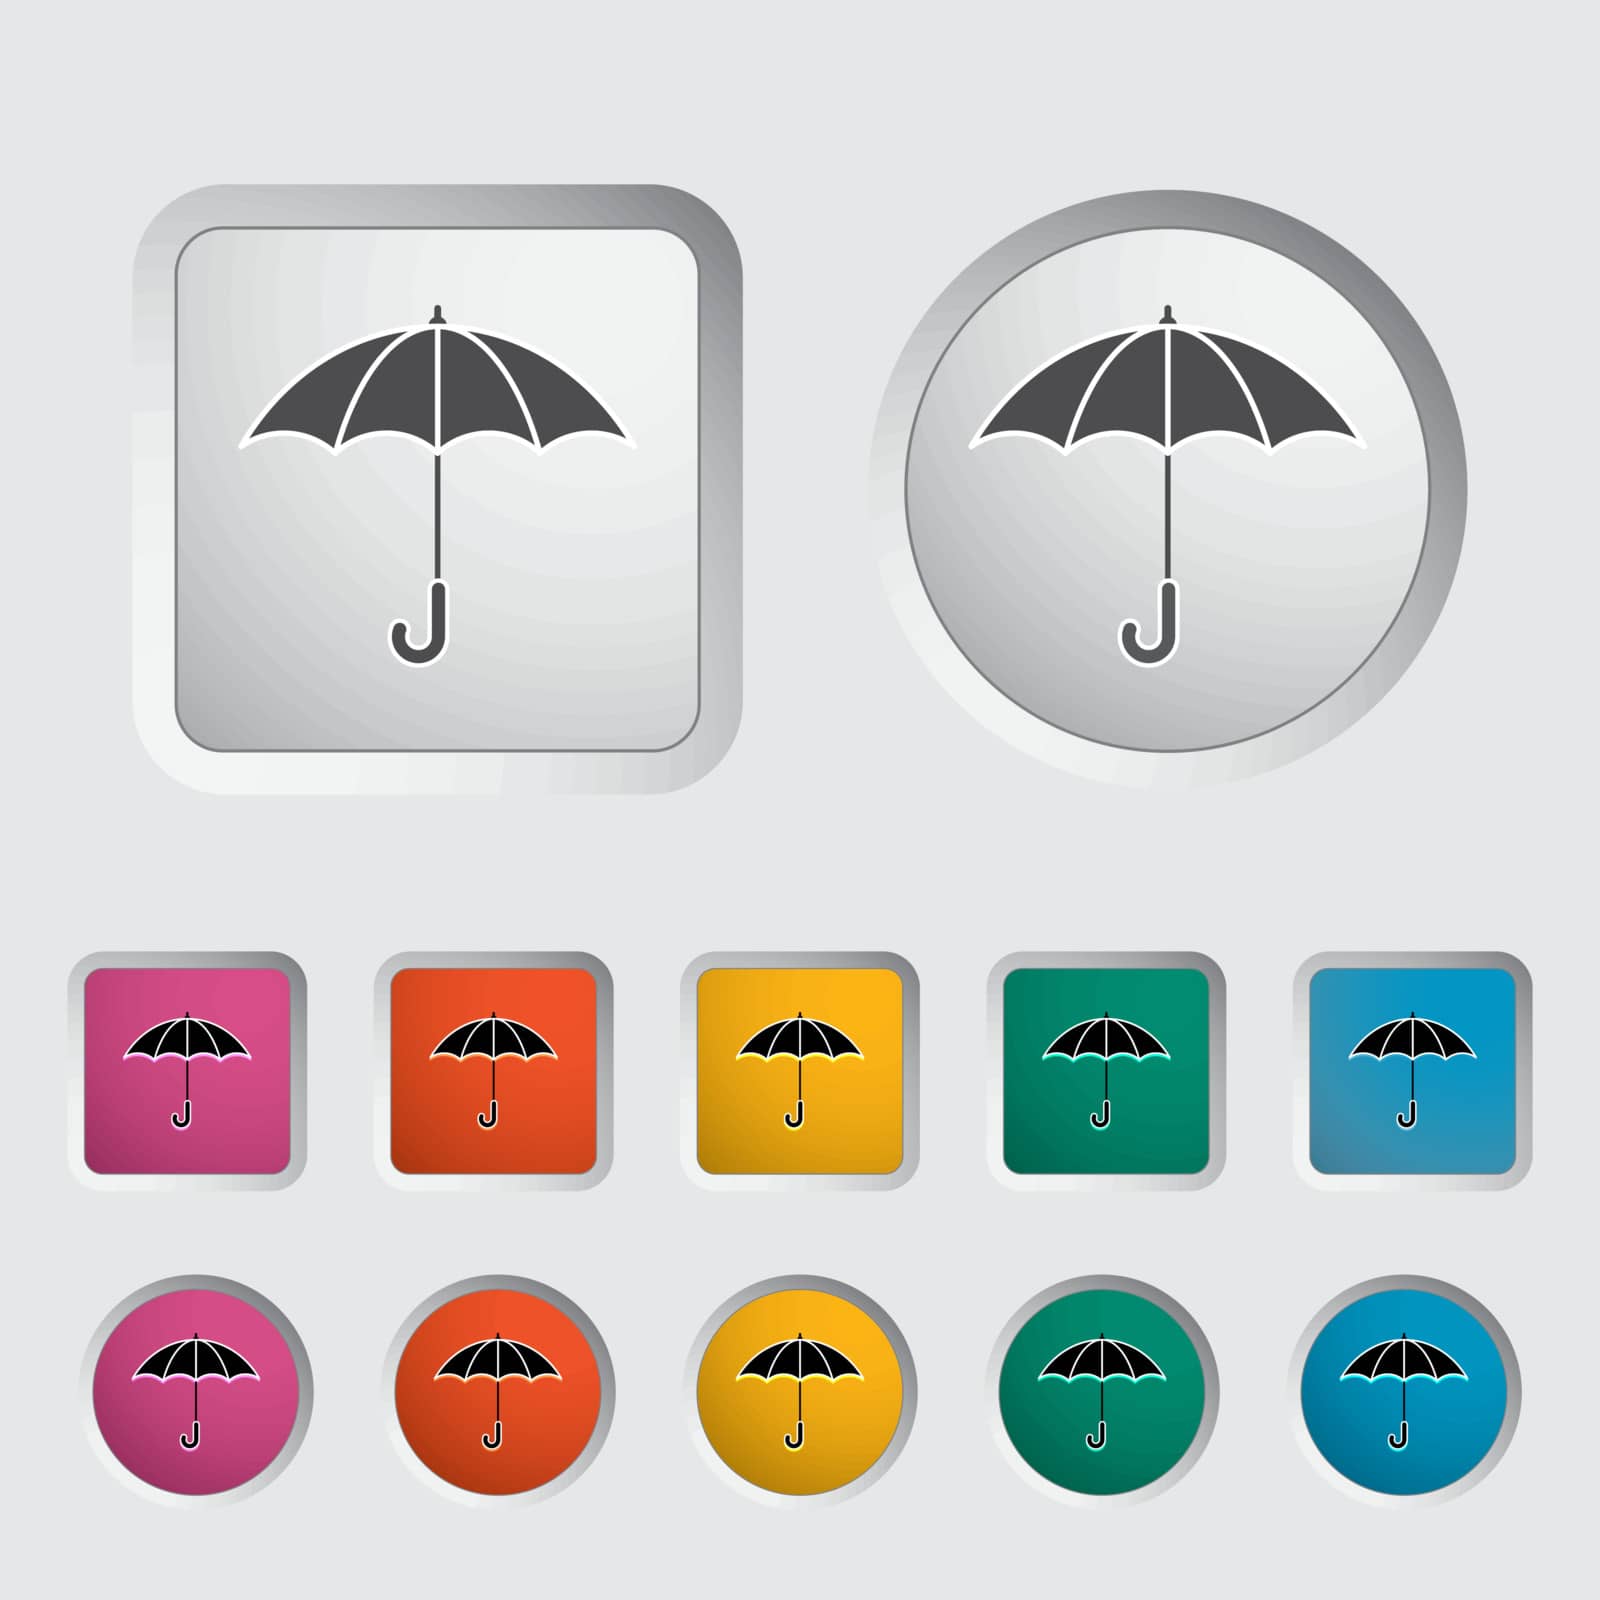 Umbrella icon. by smoki